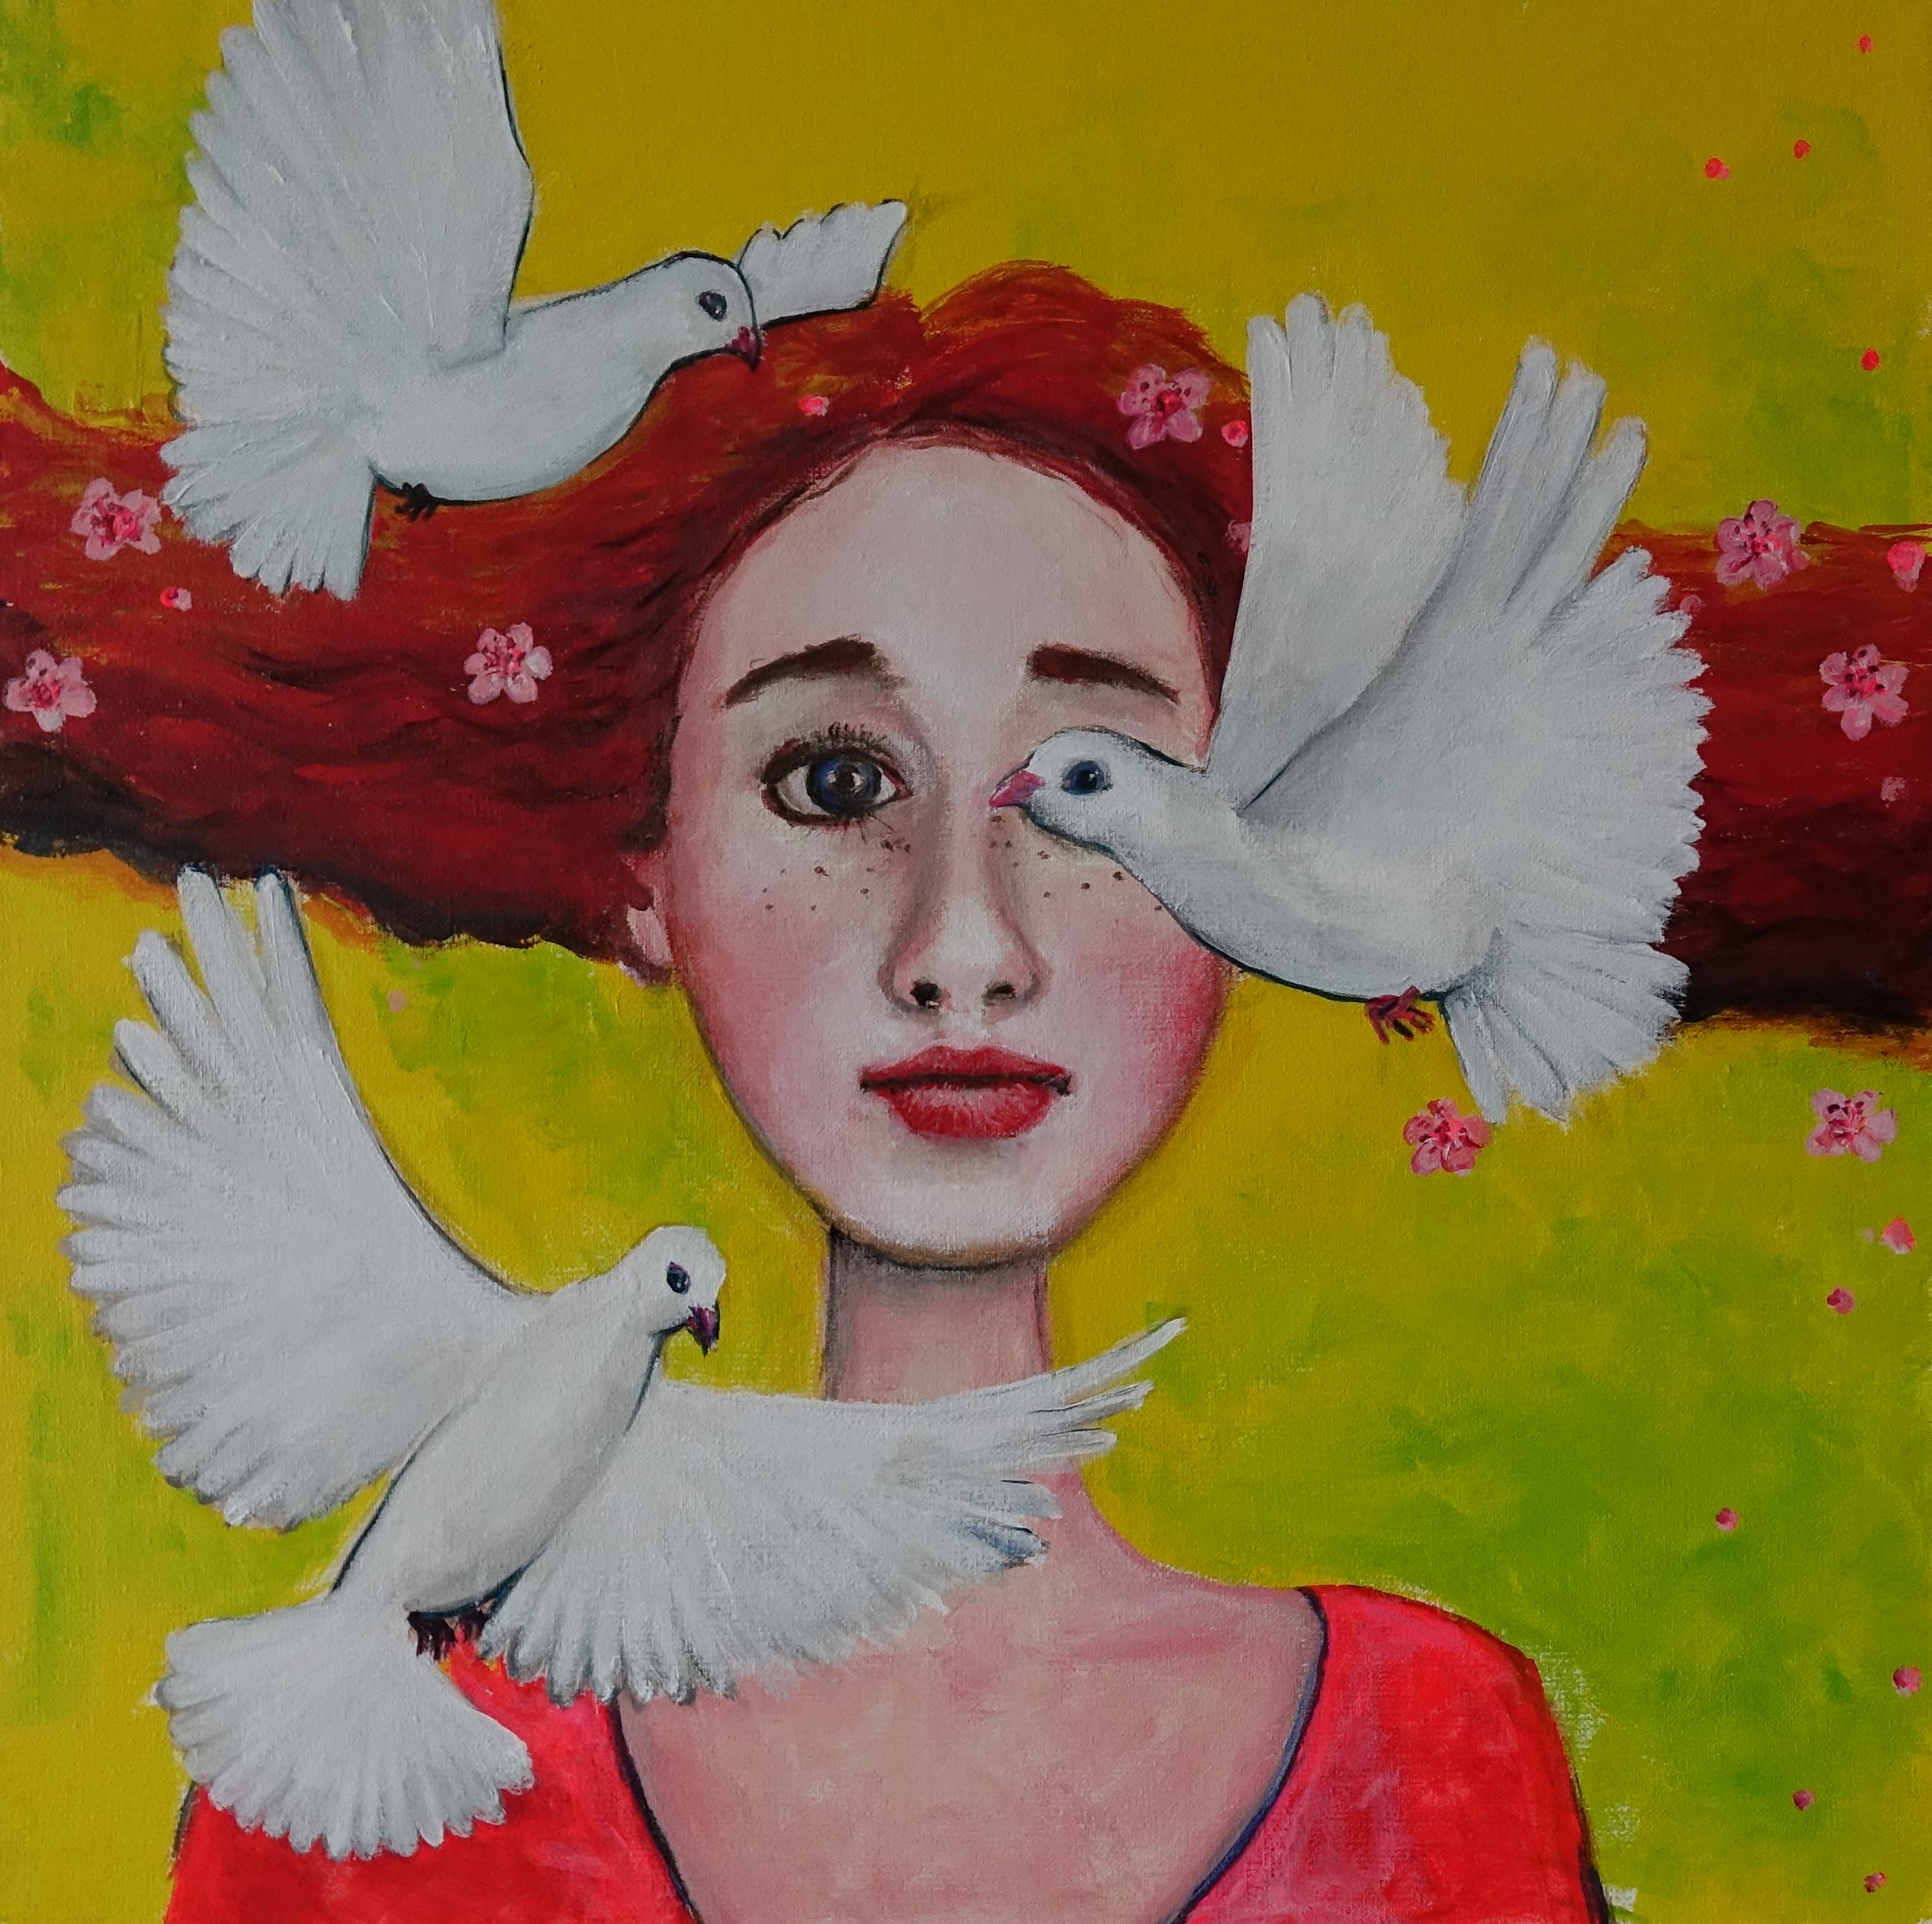 Uosobienie wiosny, kobieta z rudymi włosami, na jasno zielonym tle, wokół jej głowy trzy gołębie